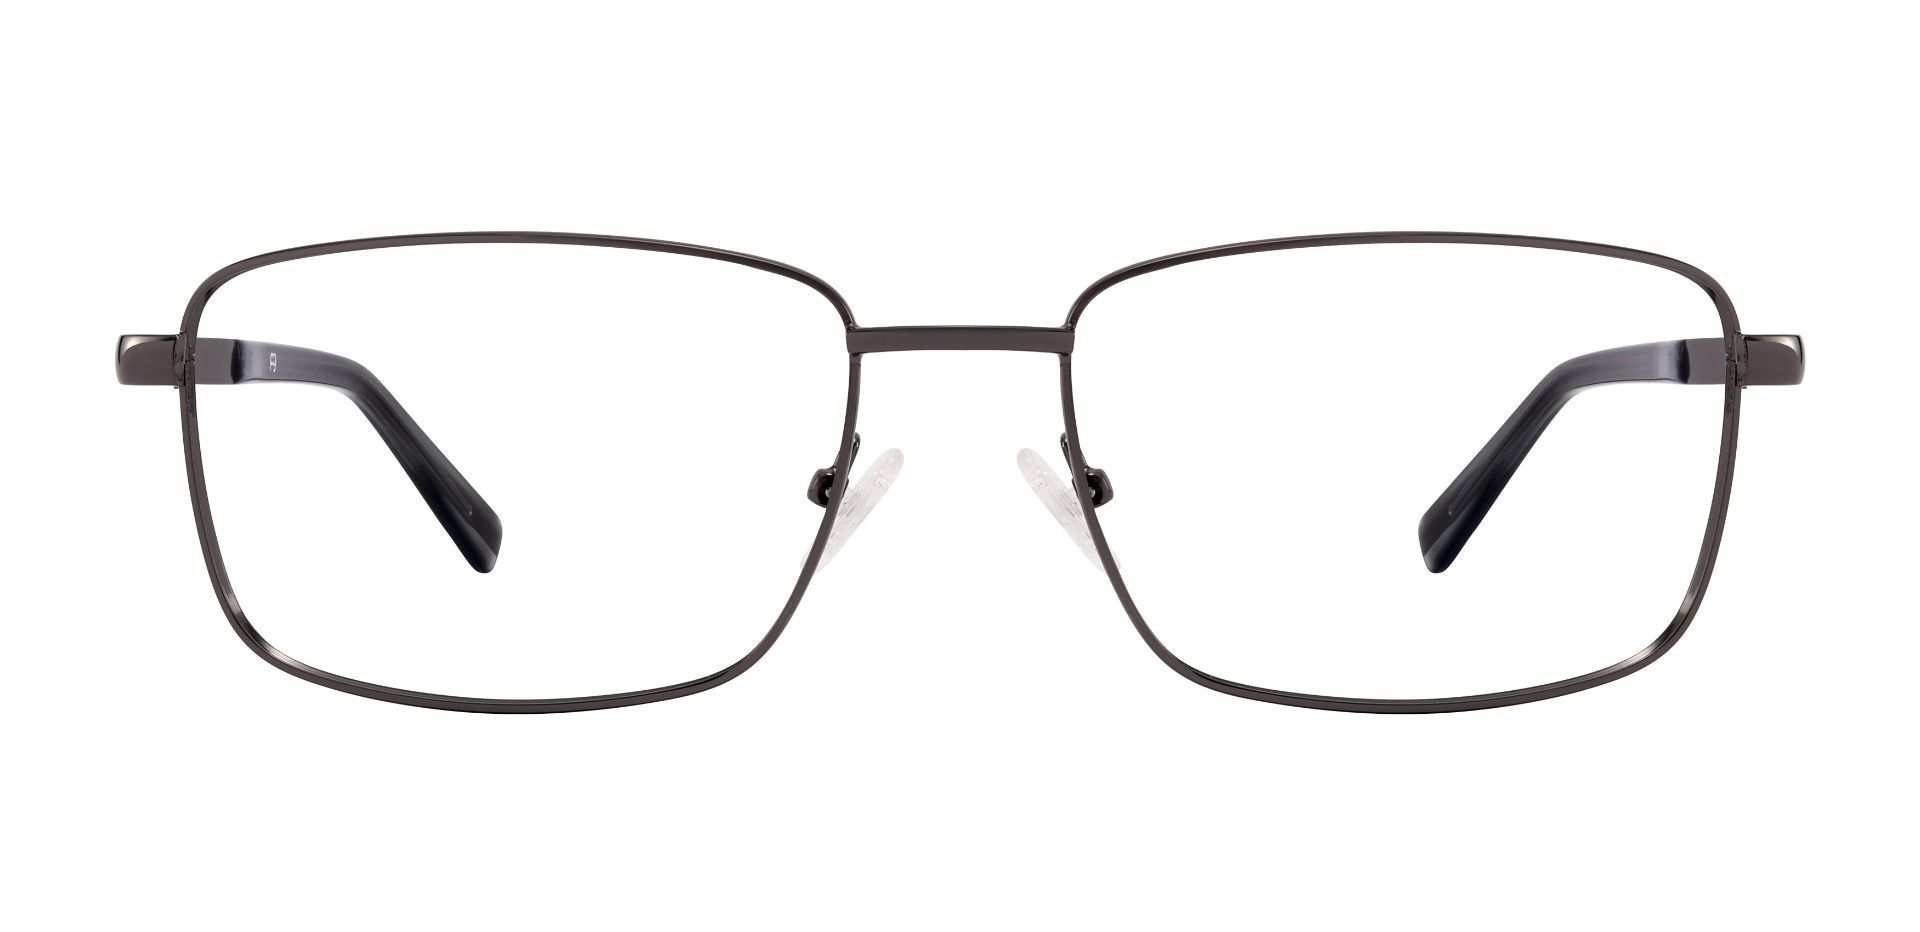 Marshall Rectangle Eyeglasses Frame - Gray